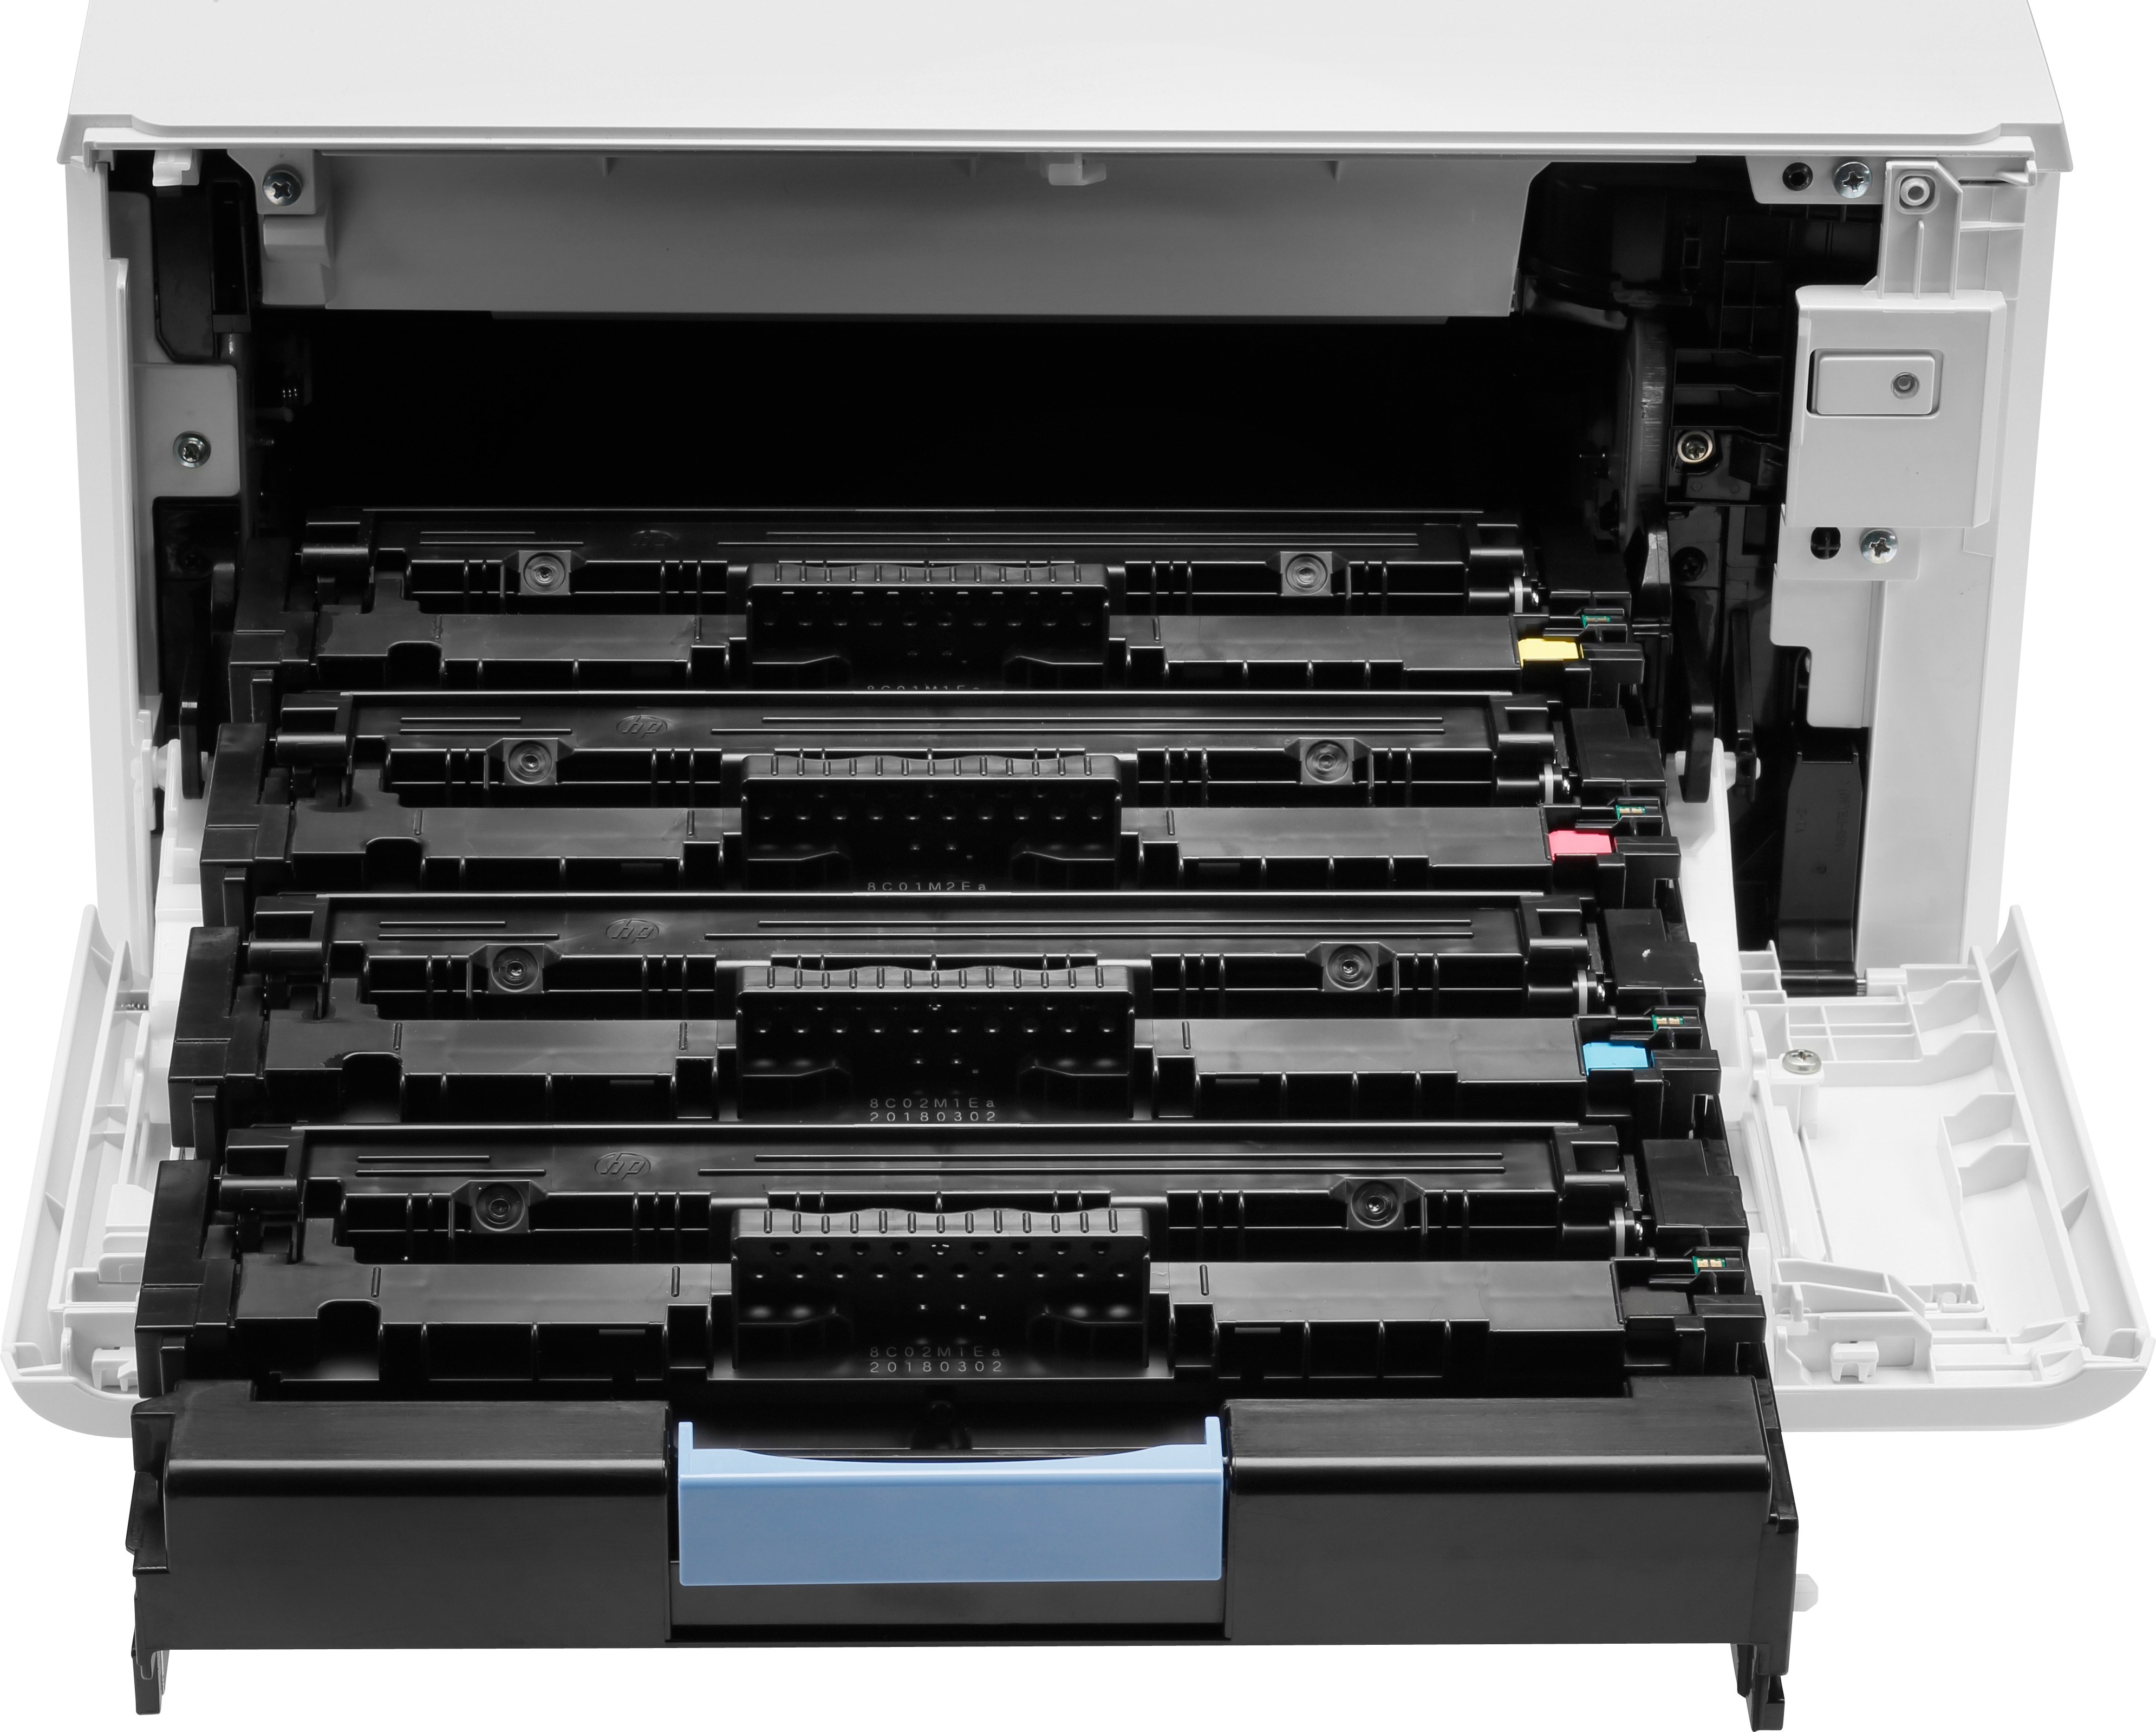 HP Color LaserJet Pro M454dn - Drucker - Laser/LED-Druck